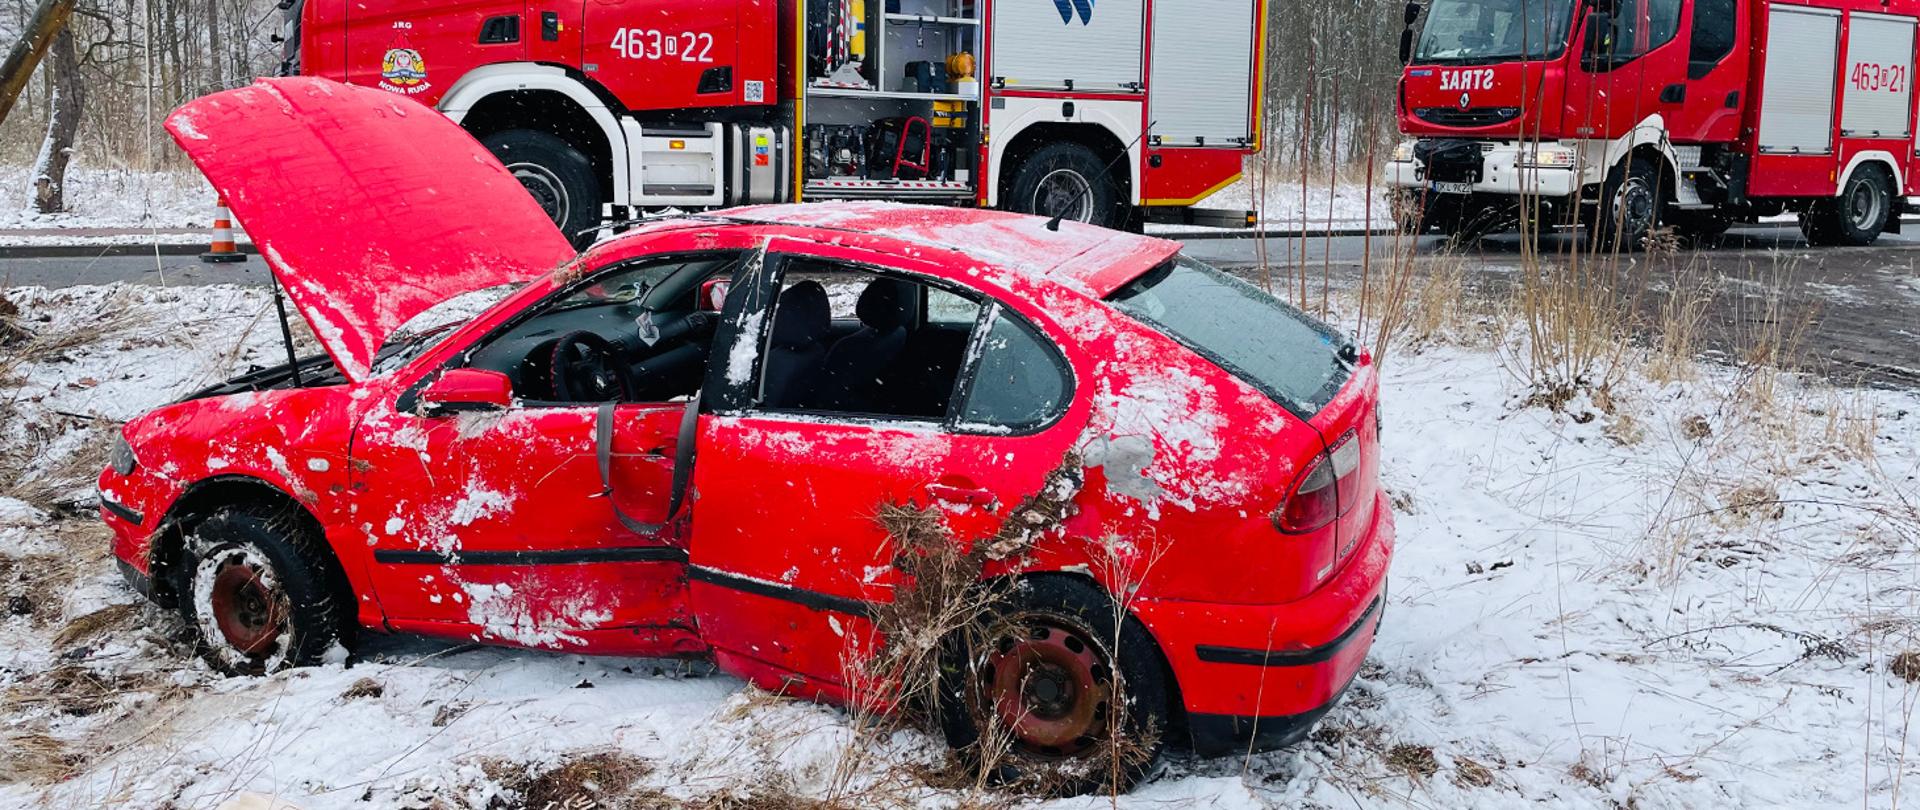 Na pierwszym planie uszkodzony samochód osobowy koloru czerwonego stojący na ośnieżonym poboczu. W tle dwa pojazdy Ochotniczych Straży Pożarnych.